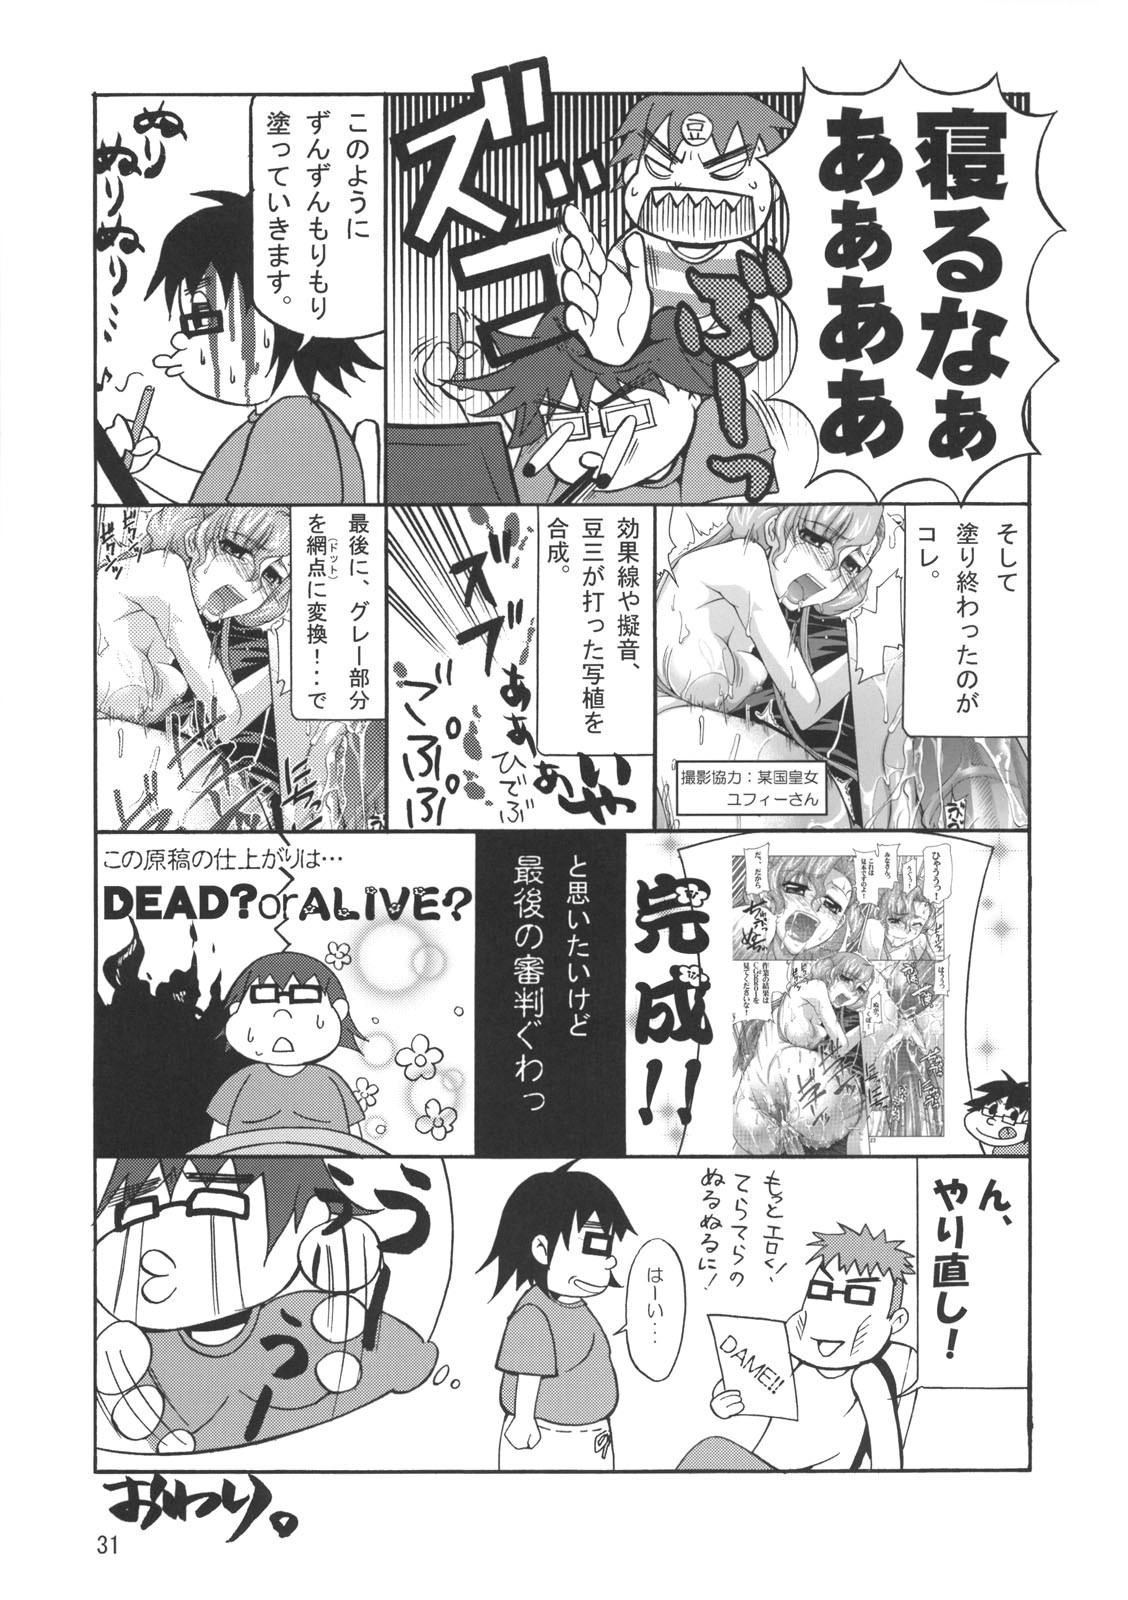 C:GÂ²R 02 code geass 28 hentai manga